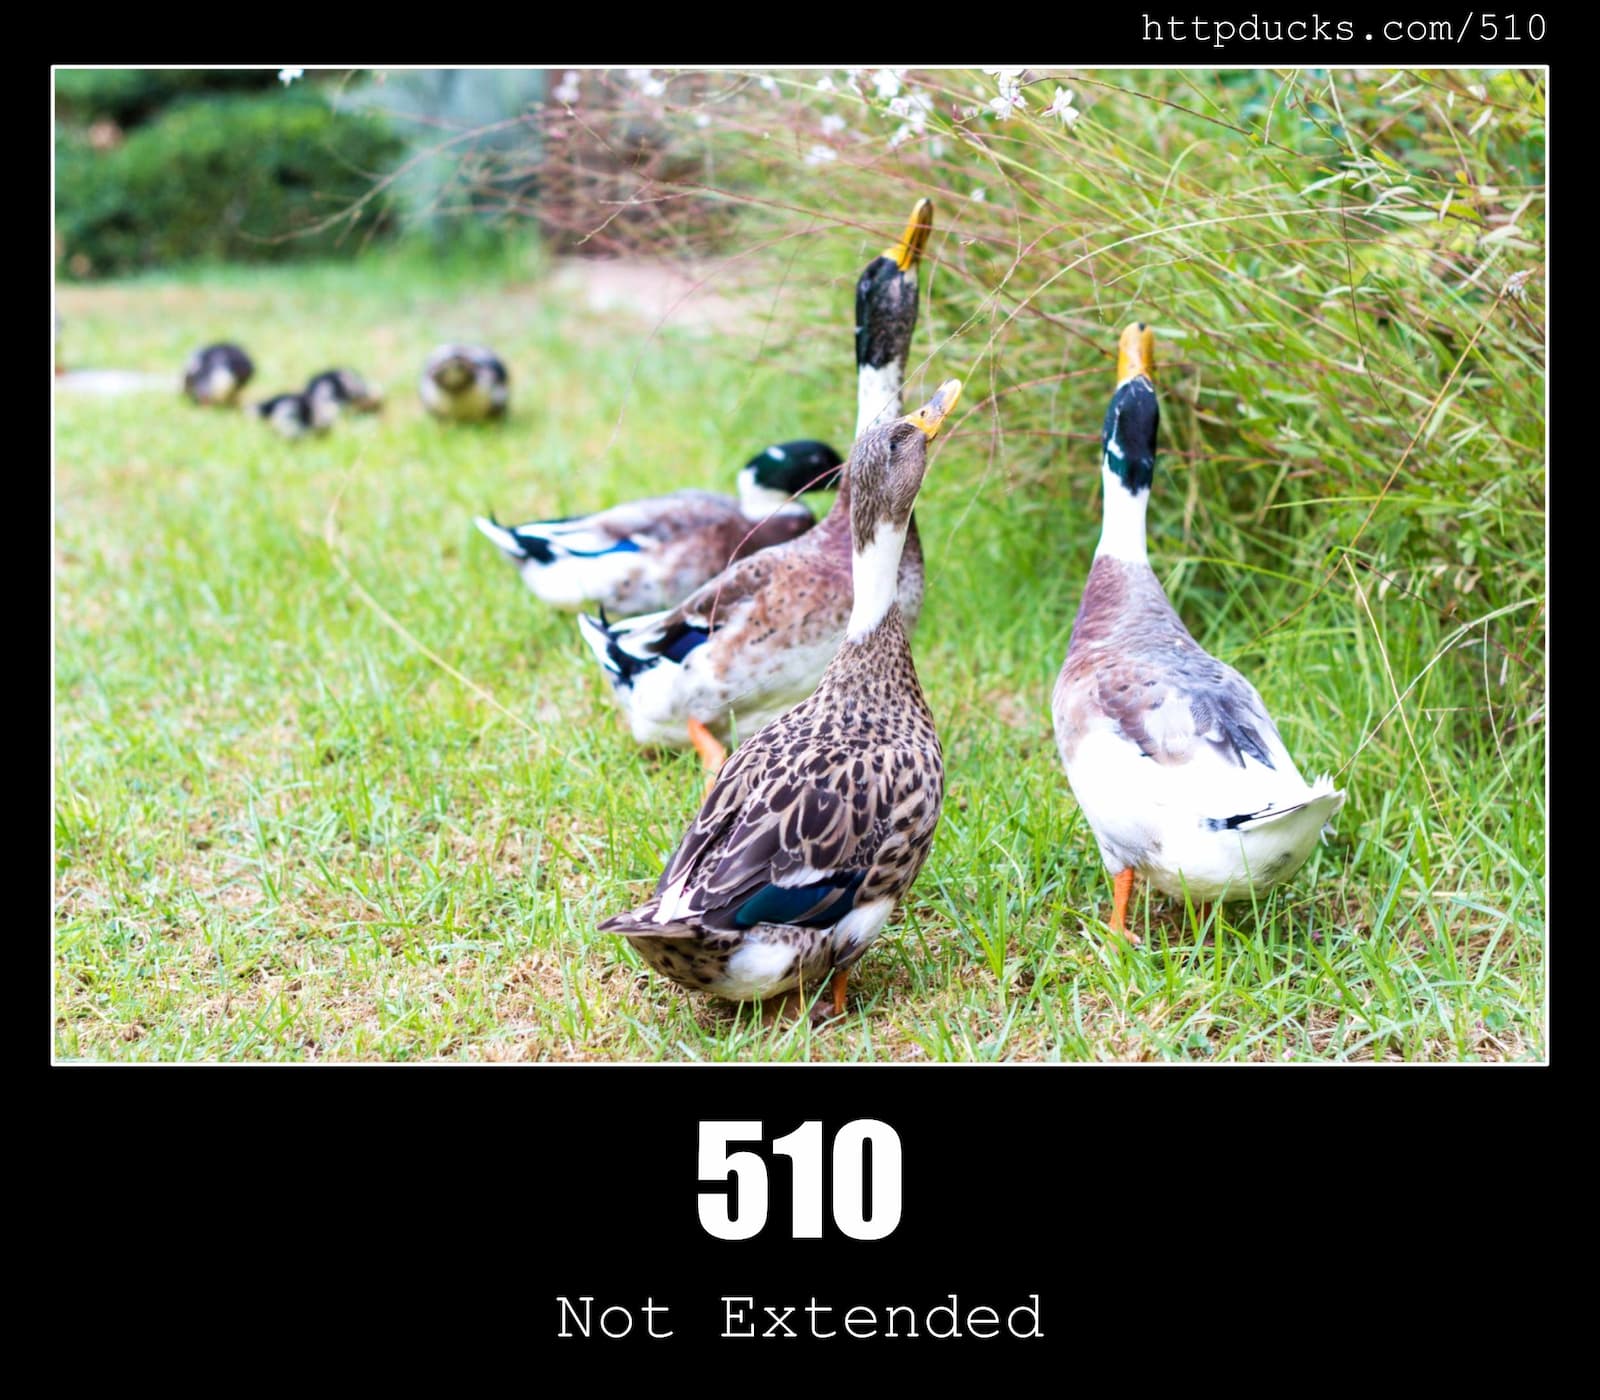 HTTP Status Code 510 Not Extended & Ducks